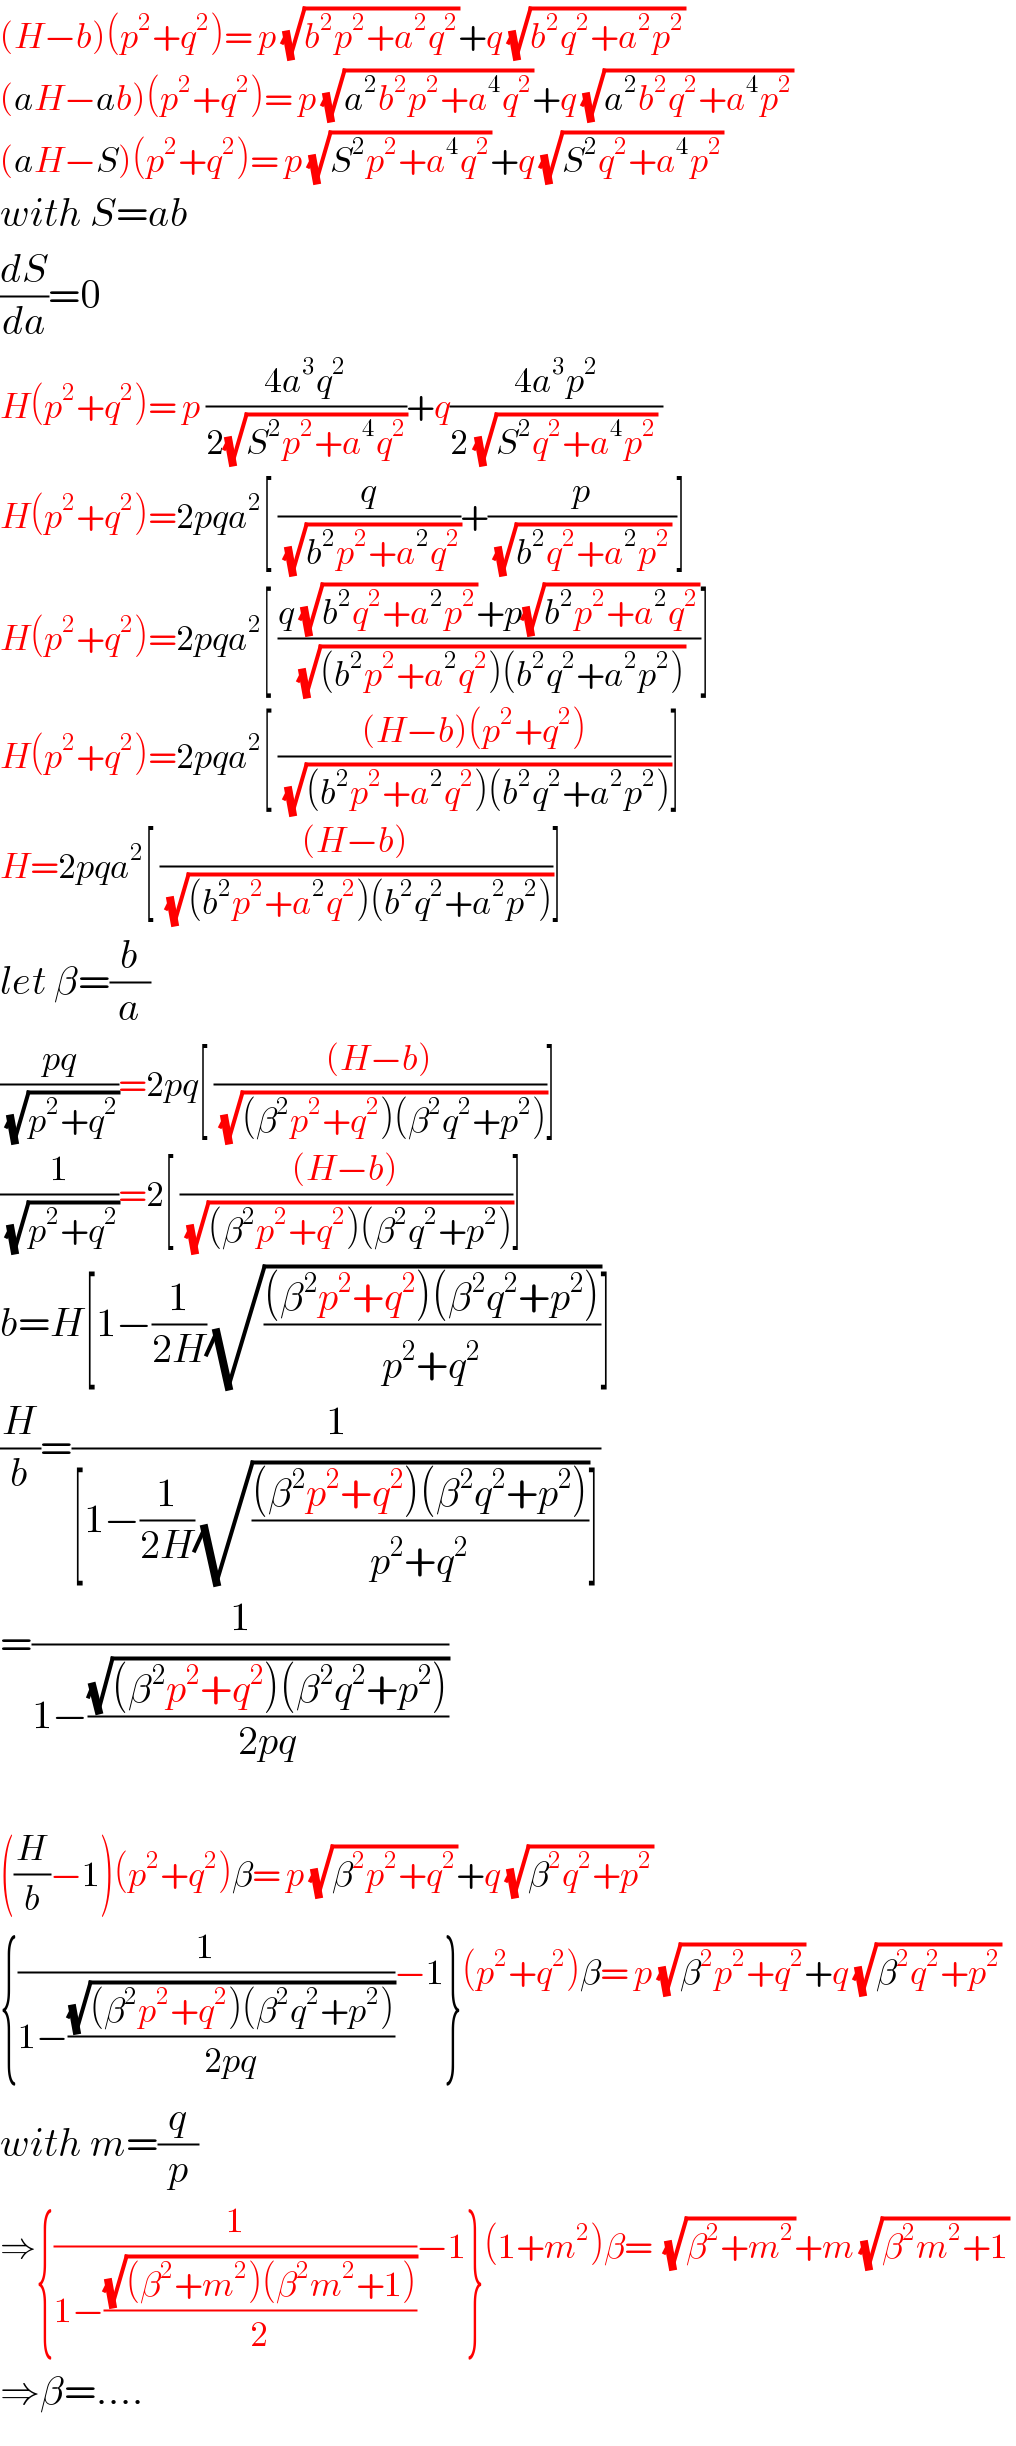 (H−b)(p^2 +q^2 )= p (√(b^2 p^2 +a^2 q^2 ))+q (√(b^2 q^2 +a^2 p^2 ))   (aH−ab)(p^2 +q^2 )= p (√(a^2 b^2 p^2 +a^4 q^2 ))+q (√(a^2 b^2 q^2 +a^4 p^2 ))   (aH−S)(p^2 +q^2 )= p (√(S^2 p^2 +a^4 q^2 ))+q (√(S^2 q^2 +a^4 p^2 ))   with S=ab  (dS/da)=0  H(p^2 +q^2 )= p ((4a^3 q^2 )/(2(√(S^2 p^2 +a^4 q^2 ))))+q((4a^3 p^2 )/(2 (√(S^2 q^2 +a^4 p^2 )) ))  H(p^2 +q^2 )=2pqa^2 [ (q/(√(b^2 p^2 +a^2 q^2 )))+(p/( (√(b^2 q^2 +a^2 p^2 )) ))]  H(p^2 +q^2 )=2pqa^2 [ ((q (√(b^2 q^2 +a^2 p^2 ))+p(√(b^2 p^2 +a^2 q^2 )))/(√((b^2 p^2 +a^2 q^2 )(b^2 q^2 +a^2 p^2 ))))]  H(p^2 +q^2 )=2pqa^2 [ (((H−b)(p^2 +q^2 ))/(√((b^2 p^2 +a^2 q^2 )(b^2 q^2 +a^2 p^2 ))))]  H=2pqa^2 [ (((H−b))/(√((b^2 p^2 +a^2 q^2 )(b^2 q^2 +a^2 p^2 ))))]  let β=(b/a)  ((pq)/(√(p^2 +q^2 )))=2pq[ (((H−b))/(√((β^2 p^2 +q^2 )(β^2 q^2 +p^2 ))))]  (1/(√(p^2 +q^2 )))=2[ (((H−b))/(√((β^2 p^2 +q^2 )(β^2 q^2 +p^2 ))))]  b=H[1−(1/(2H))(√(((β^2 p^2 +q^2 )(β^2 q^2 +p^2 ))/(p^2 +q^2 )))]  (H/b)=(1/([1−(1/(2H))(√(((β^2 p^2 +q^2 )(β^2 q^2 +p^2 ))/(p^2 +q^2 )))]))  =(1/(1−((√((β^2 p^2 +q^2 )(β^2 q^2 +p^2 )))/(2pq))))    ((H/b)−1)(p^2 +q^2 )β= p (√(β^2 p^2 +q^2 ))+q (√(β^2 q^2 +p^2 ))   {(1/(1−((√((β^2 p^2 +q^2 )(β^2 q^2 +p^2 )))/(2pq))))−1}(p^2 +q^2 )β= p (√(β^2 p^2 +q^2 ))+q (√(β^2 q^2 +p^2 ))   with m=(q/p)  ⇒{(1/(1−((√((β^2 +m^2 )(β^2 m^2 +1)))/2)))−1}(1+m^2 )β=  (√(β^2 +m^2 ))+m (√(β^2 m^2 +1))   ⇒β=....  